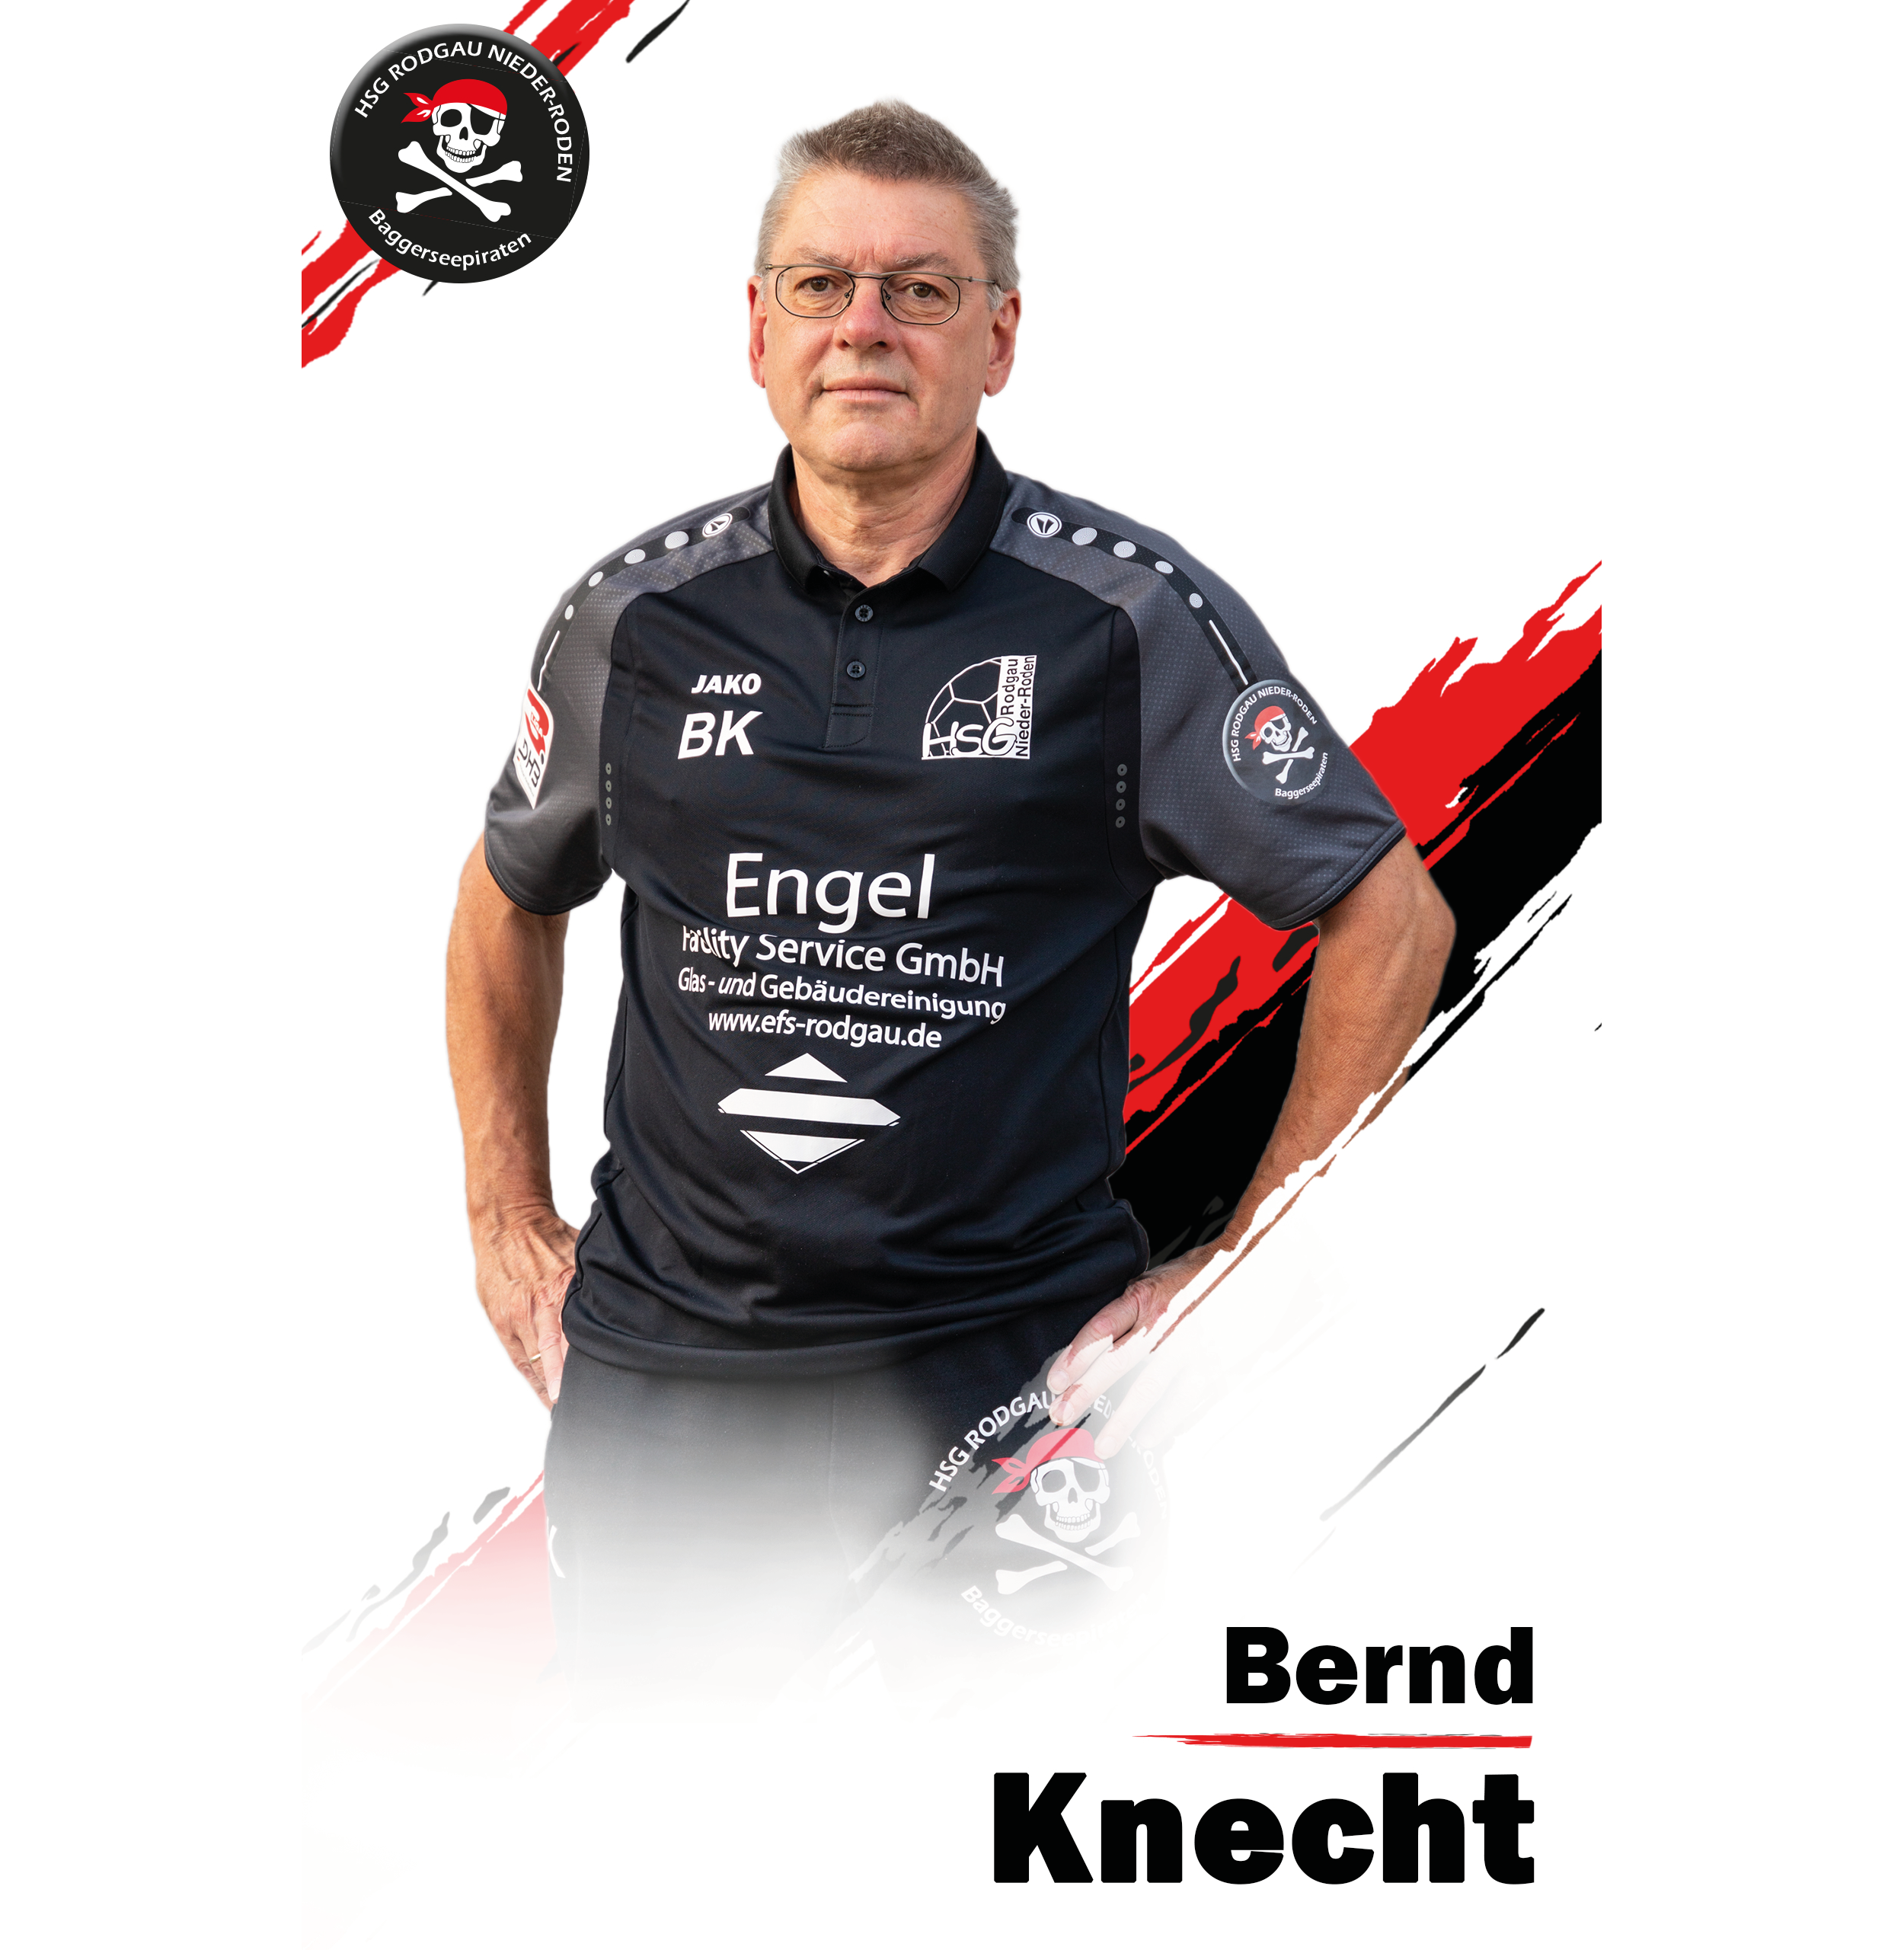 Bernd Knecht